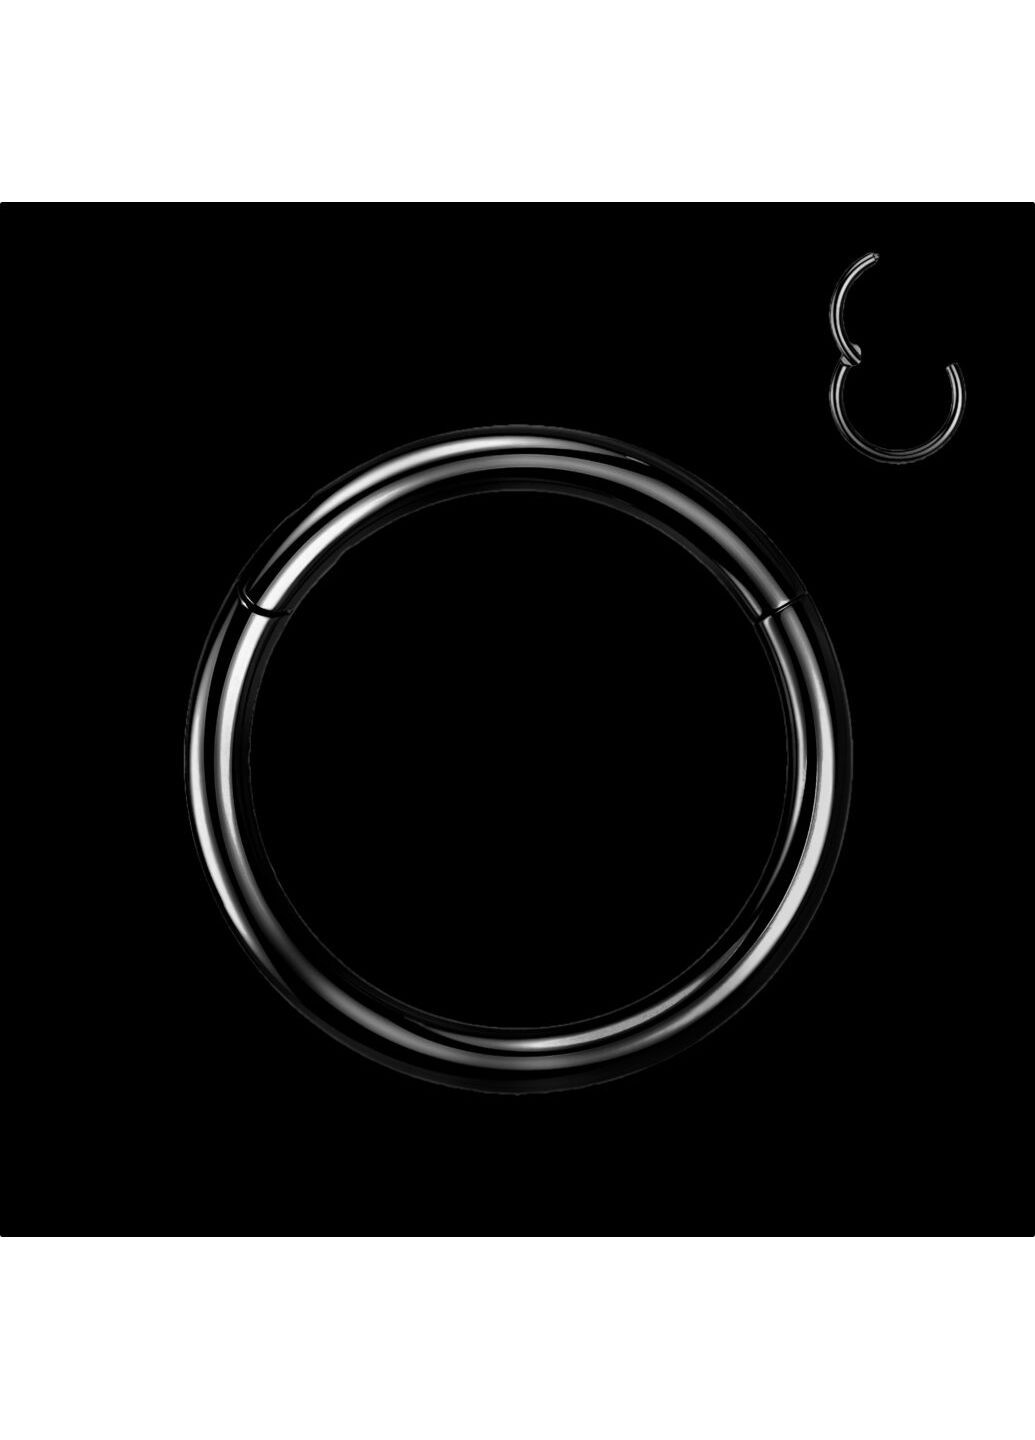 Универсальное кольцо-кликер из титана черного цвета, серьга для пирсинга септума, хряща уха, мочки, брови, носа, соски, пупка Spikes (287337840)